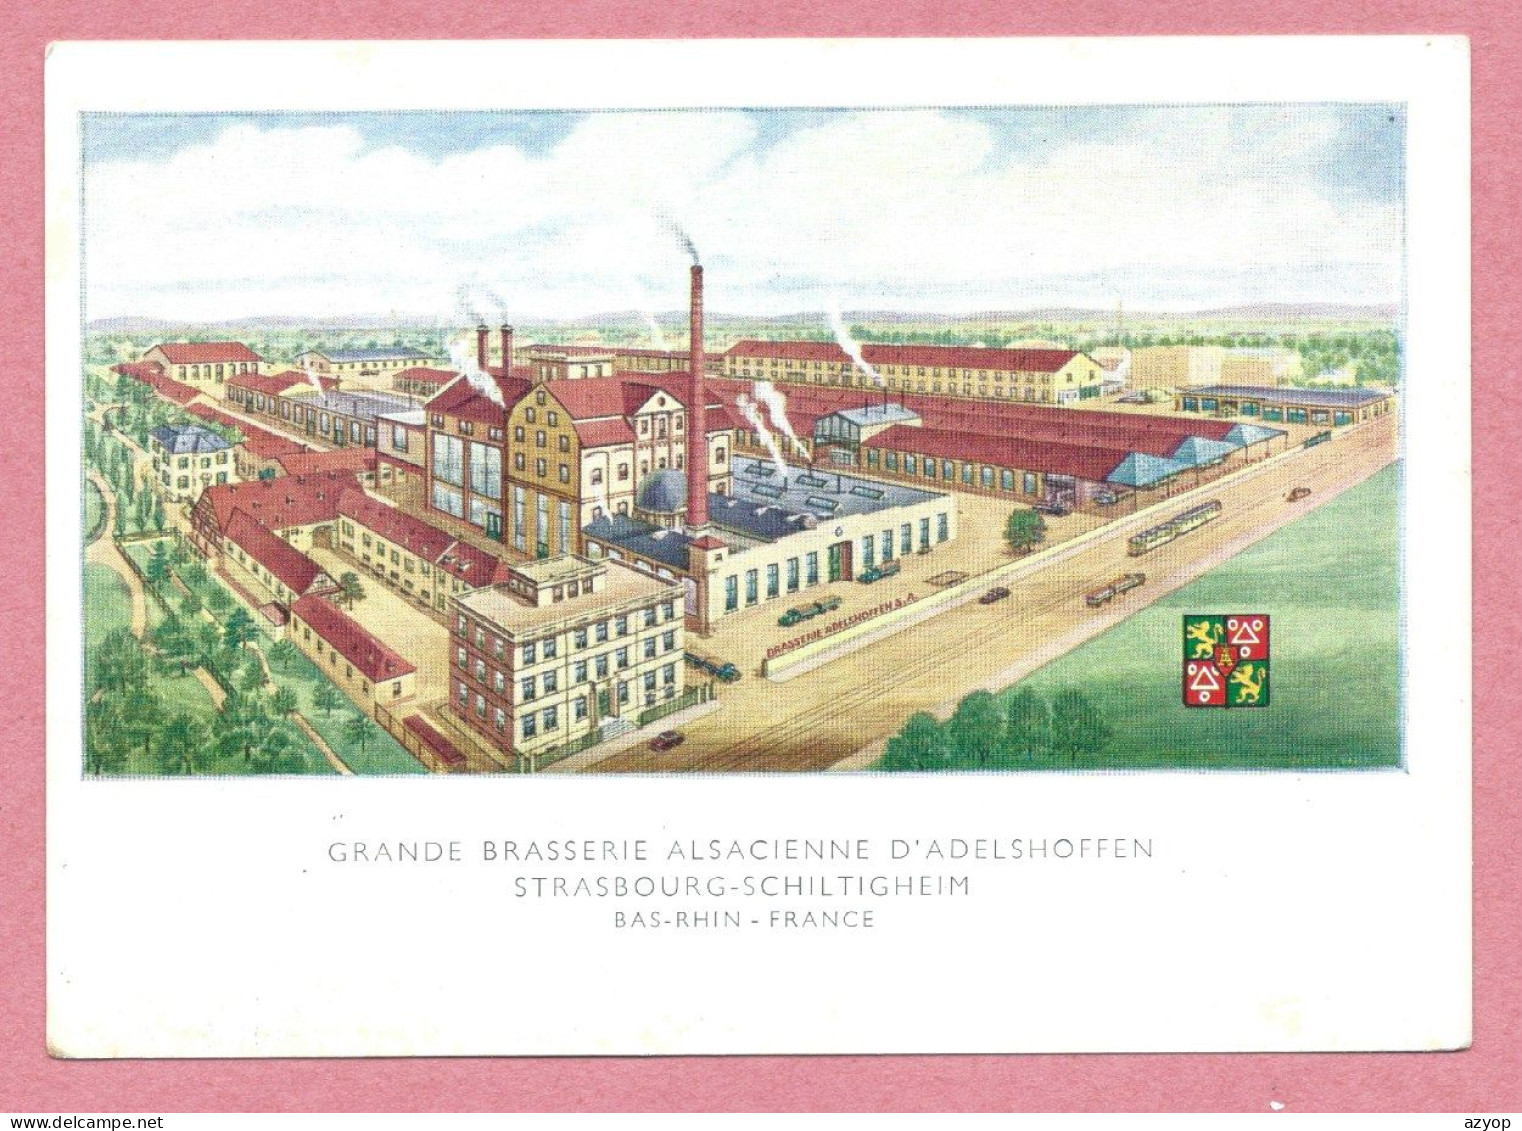 67 - SCHILTIGHEIM - Grande Brasserie Alsacienne ADELSHOFFEN - Format 10,5 X 15 - Dos Blanc - Dessin - Litho - Schiltigheim